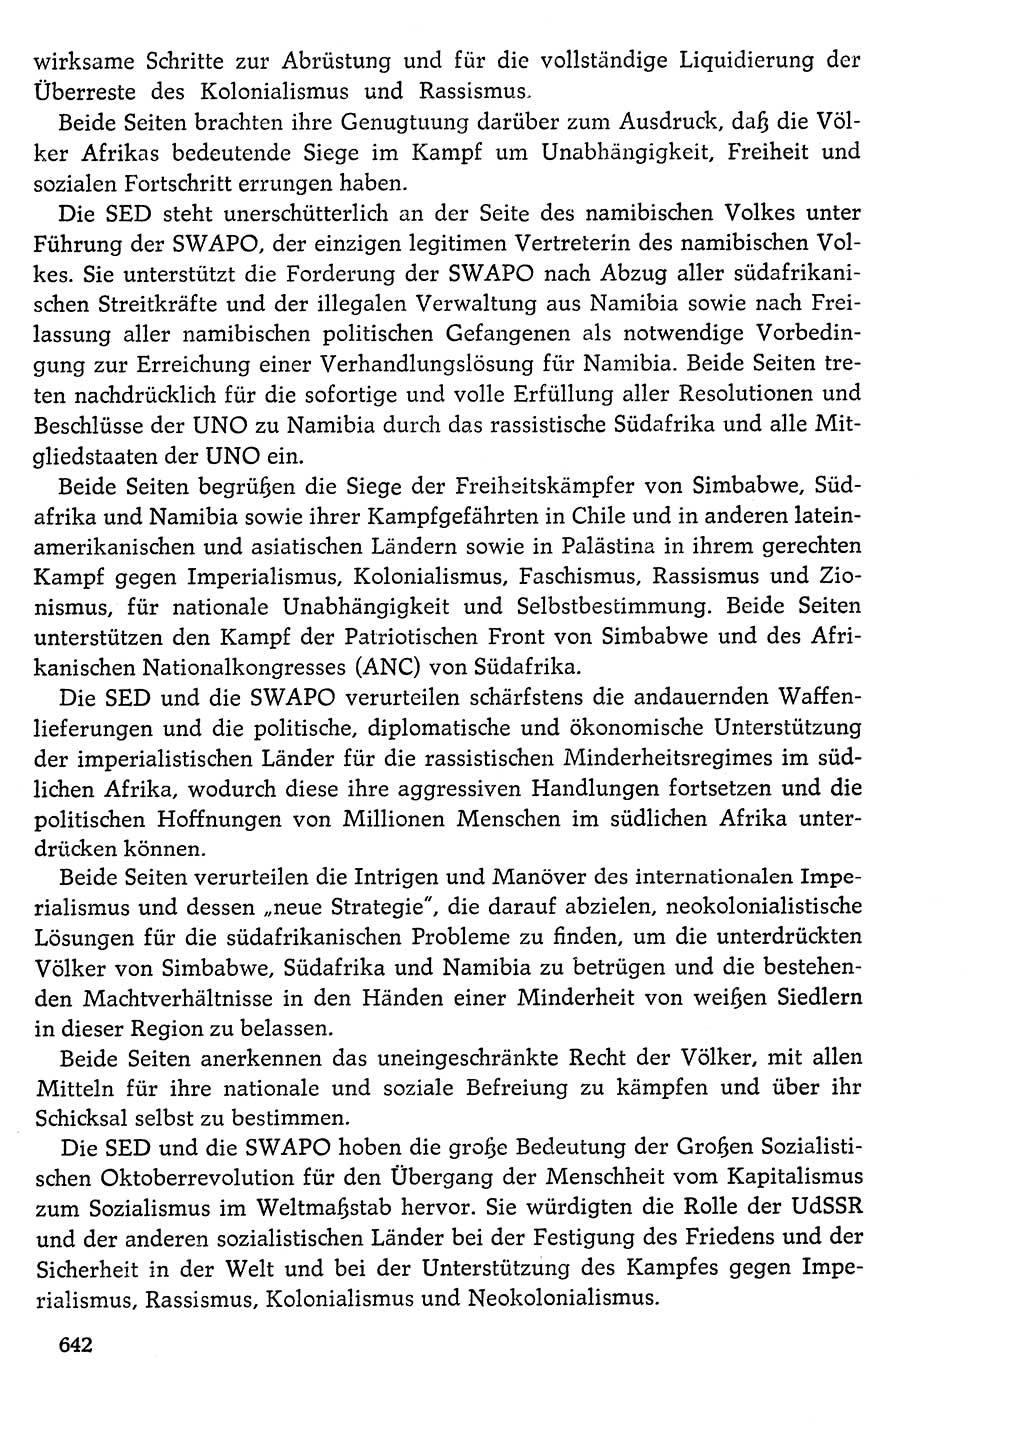 Dokumente der Sozialistischen Einheitspartei Deutschlands (SED) [Deutsche Demokratische Republik (DDR)] 1976-1977, Seite 642 (Dok. SED DDR 1976-1977, S. 642)